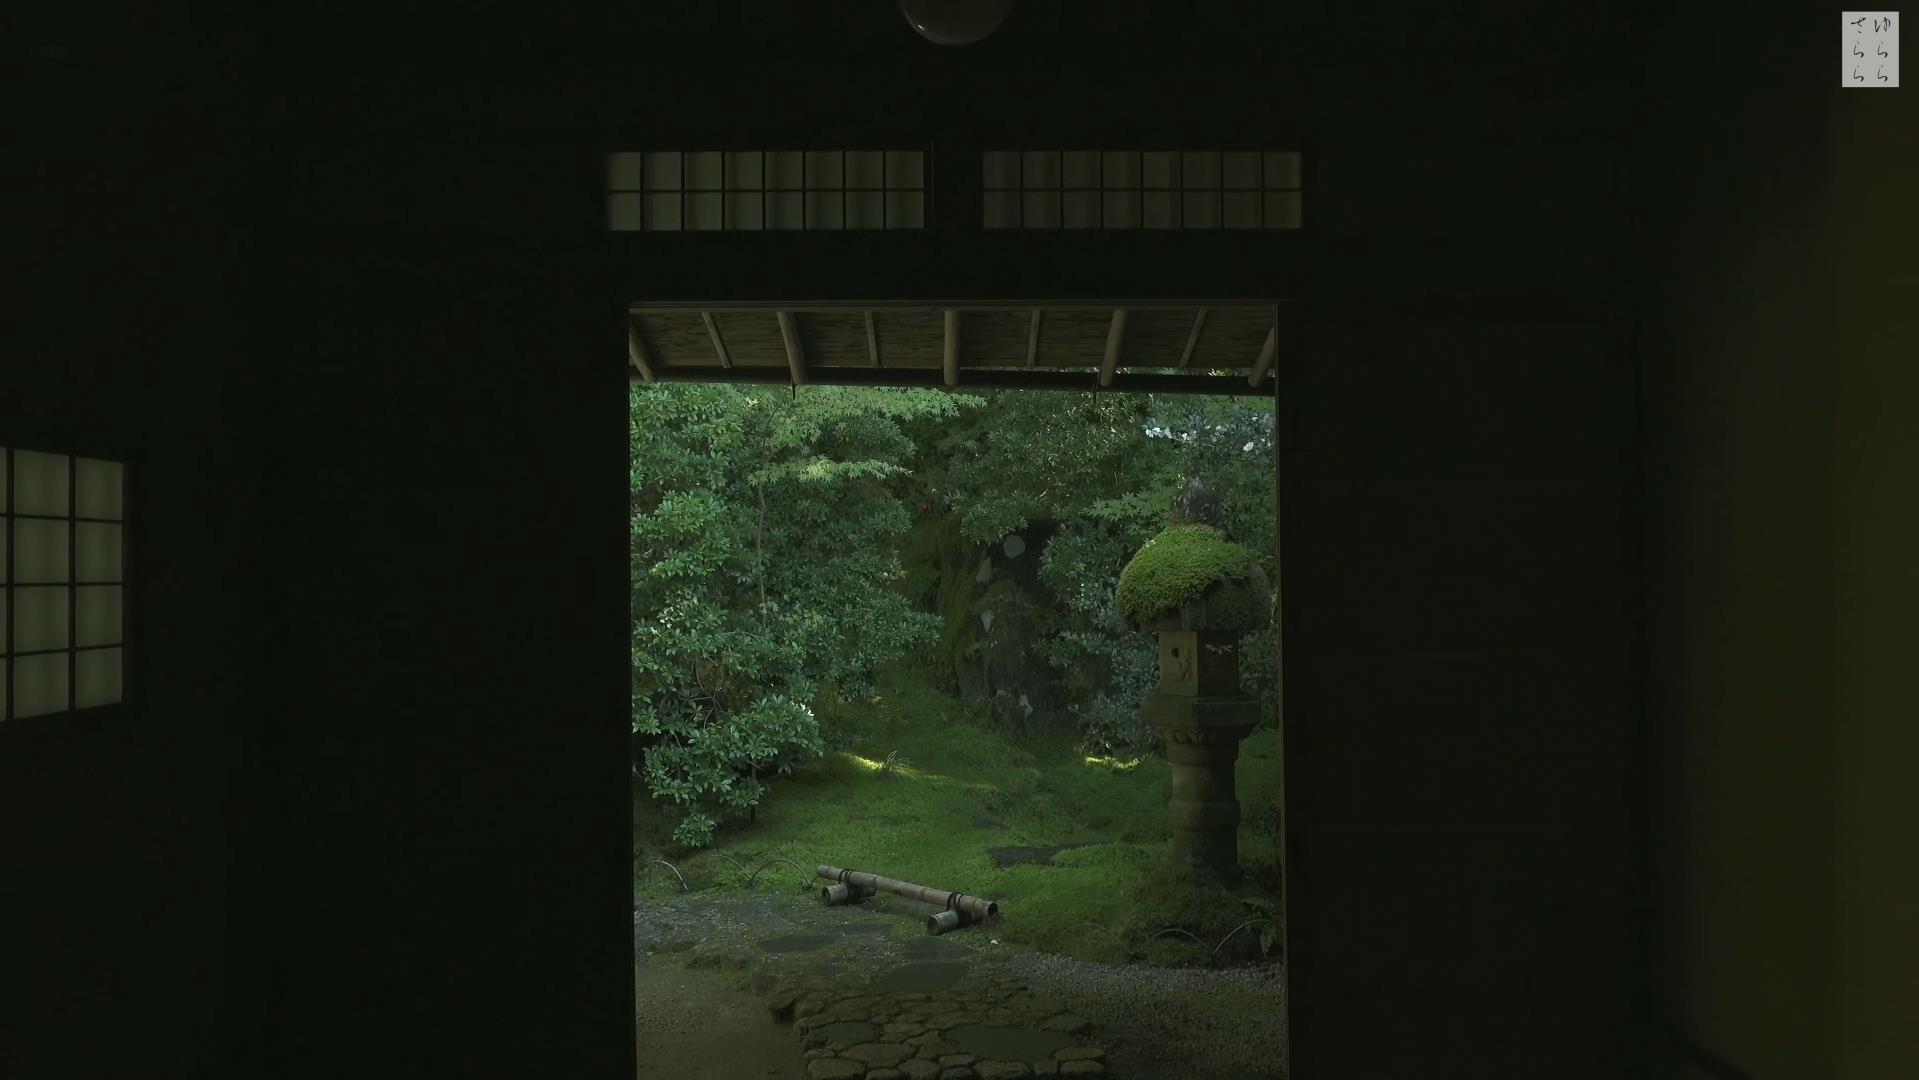 Wabi-Sabi-侘寂庭院,侘寂庭院,京都,侘寂设计,侘寂视频下载,日式侘寂庭院,瑠璃光院